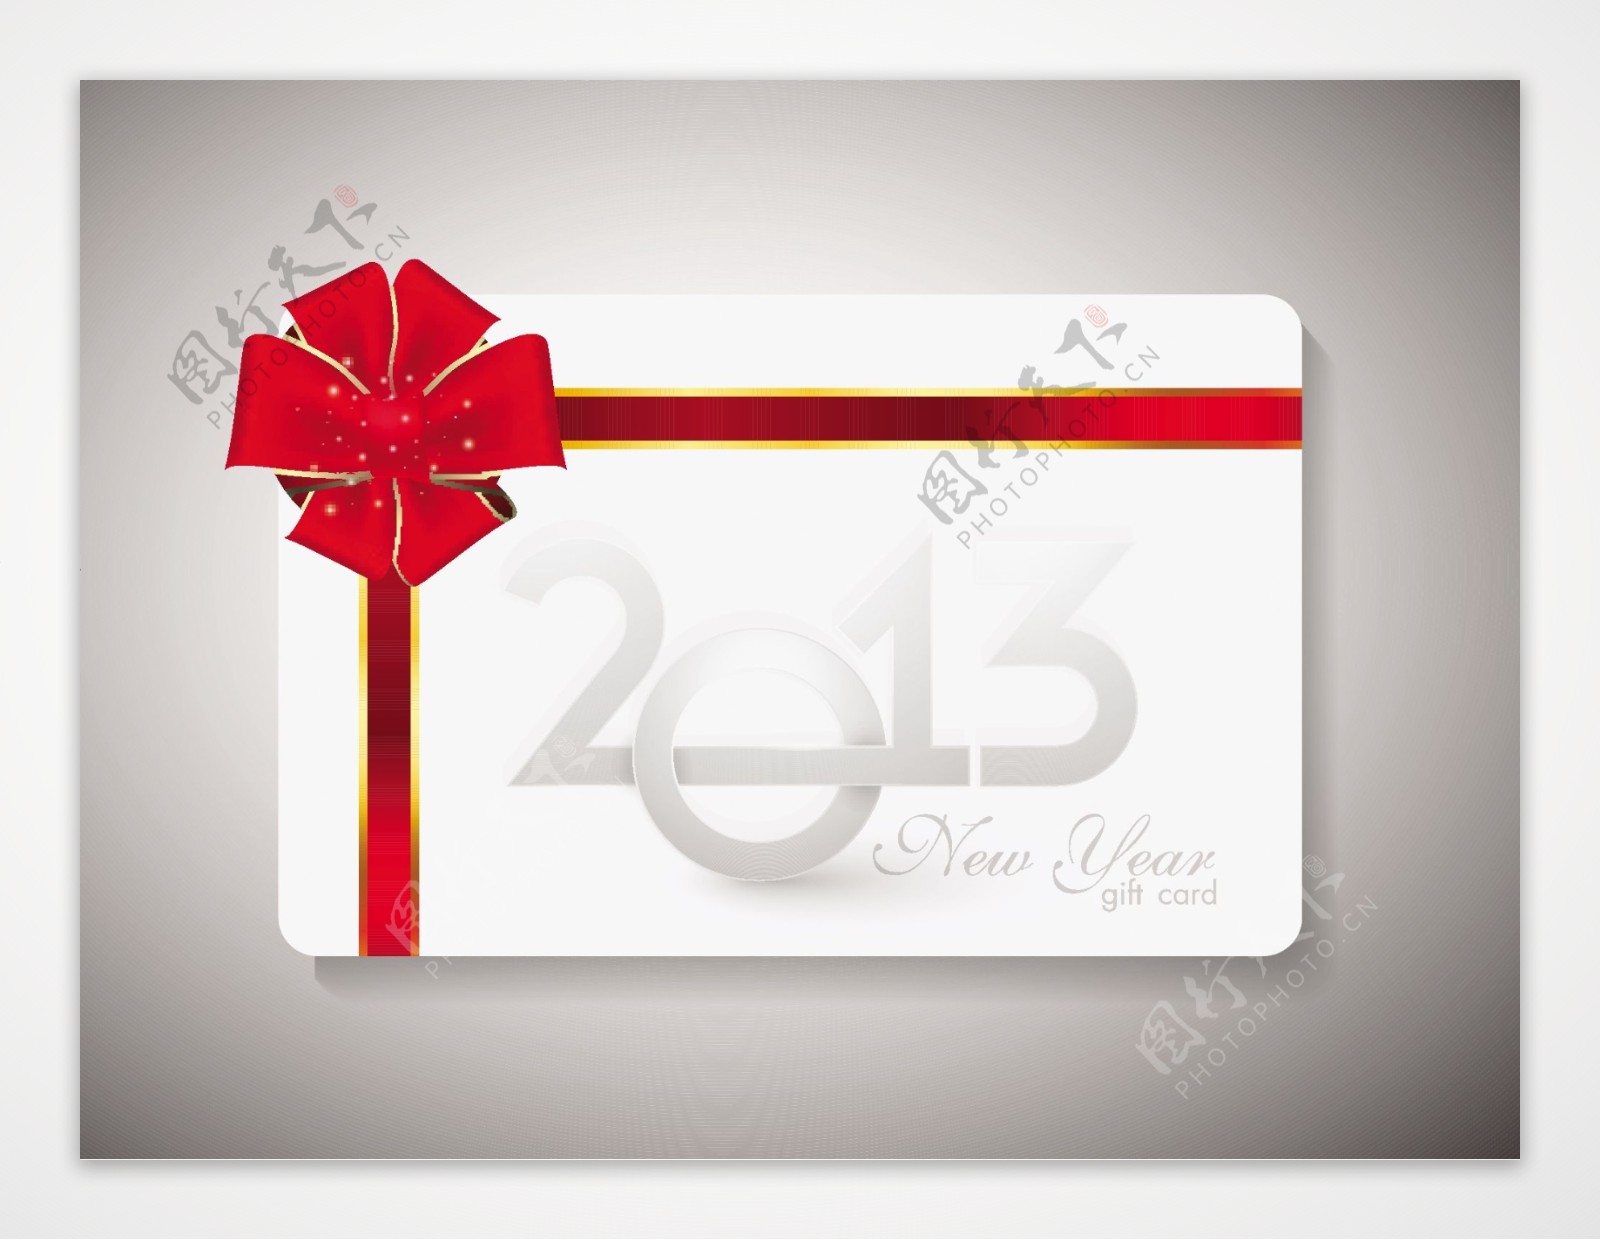 用红丝带新年庆典礼品卡